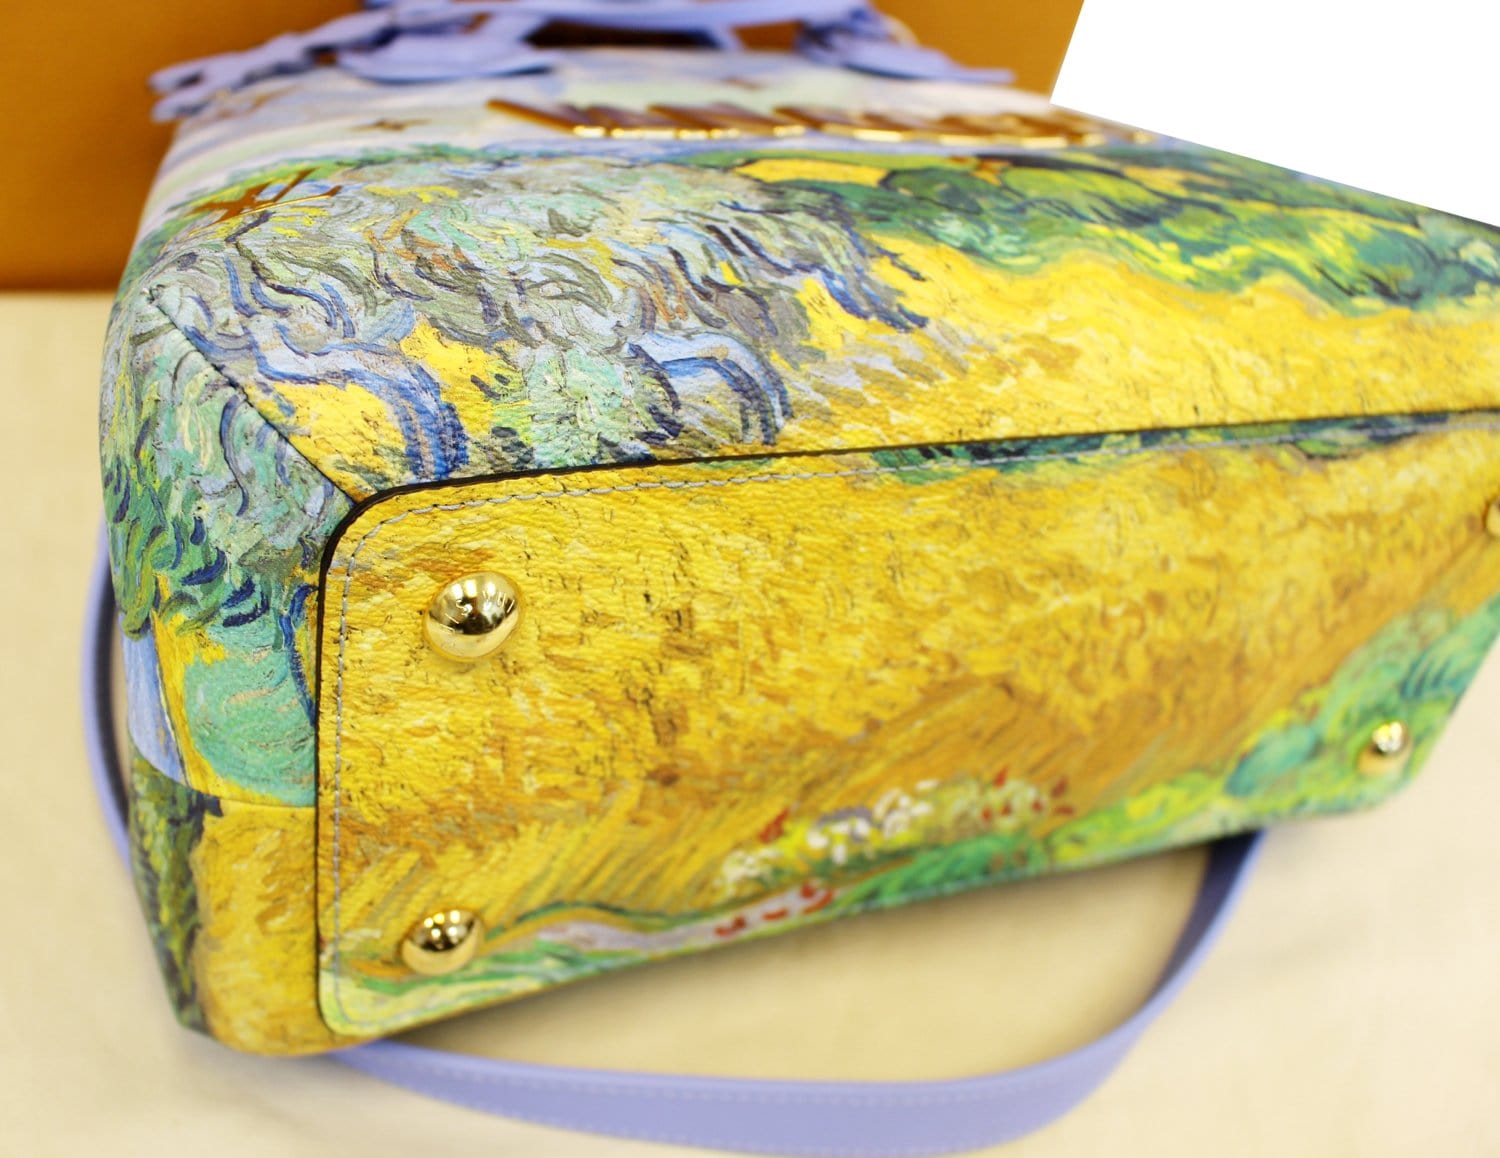 LOUIS VUITTON Montaigne MM Van Gogh Masters LV X Koon Shoulder Bag